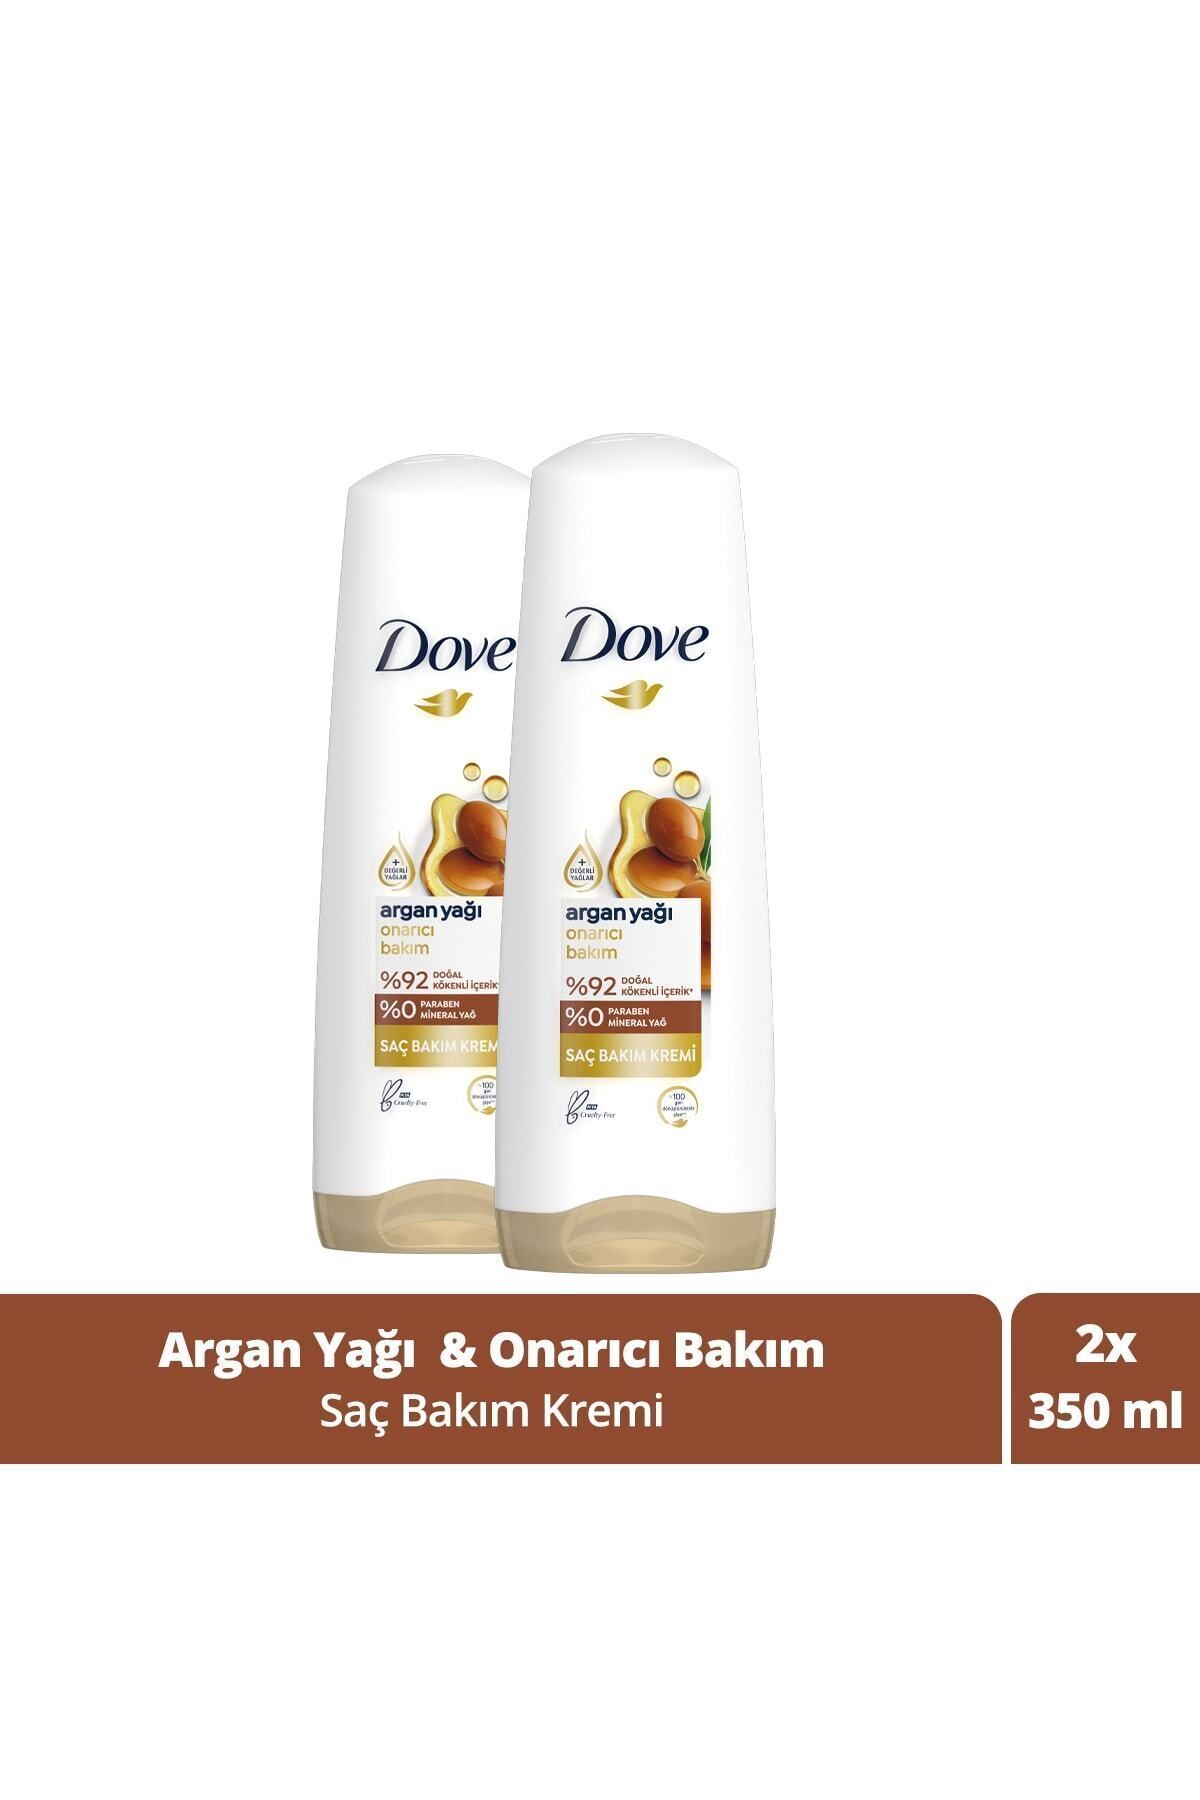 Dove Ultra Care Saç Bakım Kremi Onarıcı Bakım Argan Yağı 350 ml X2 Adet